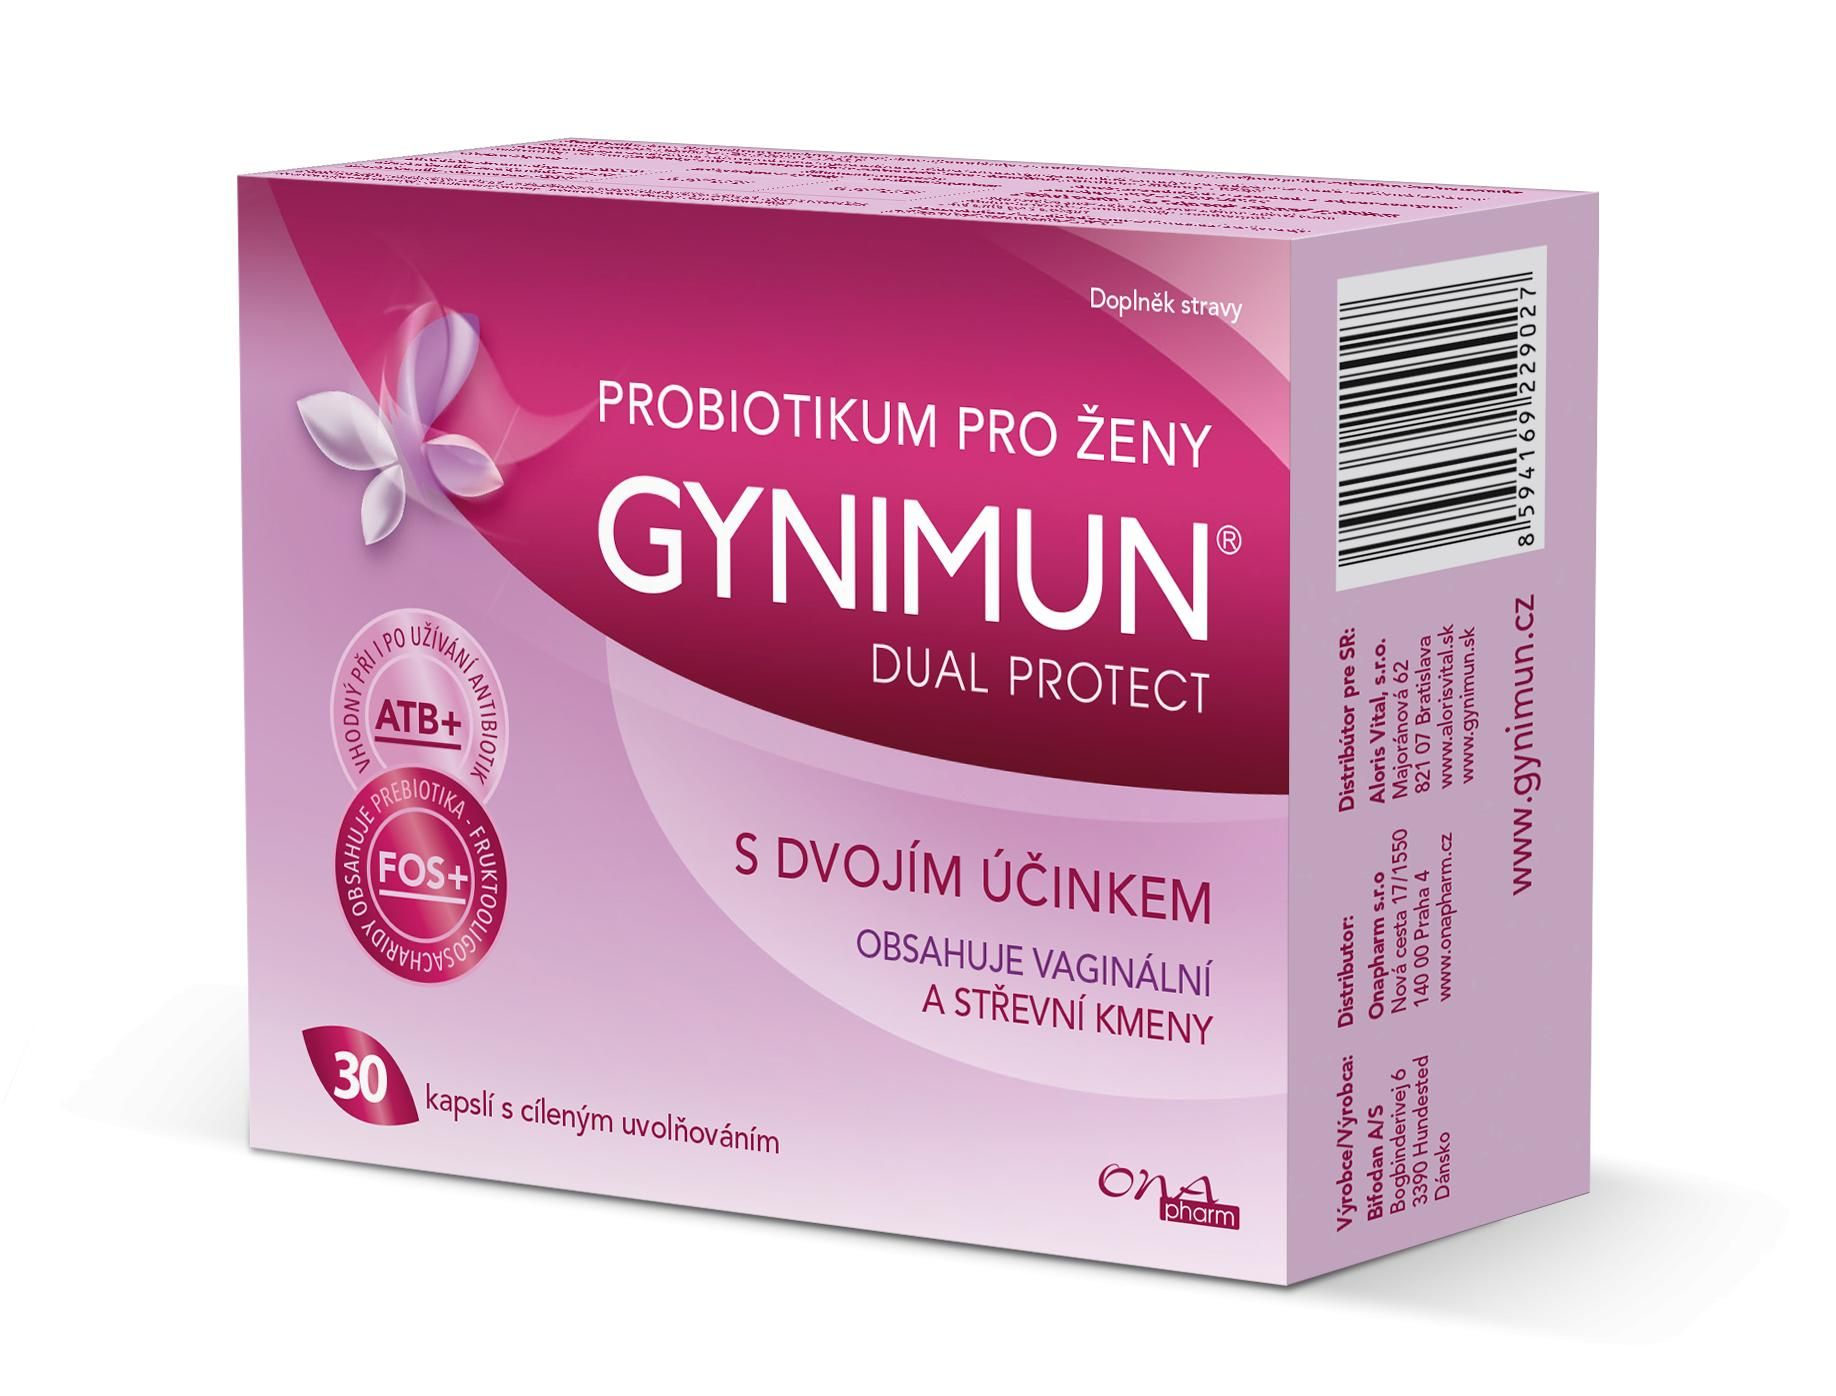 GYNIMUN dual protect 30 kapslí GYNIMUN